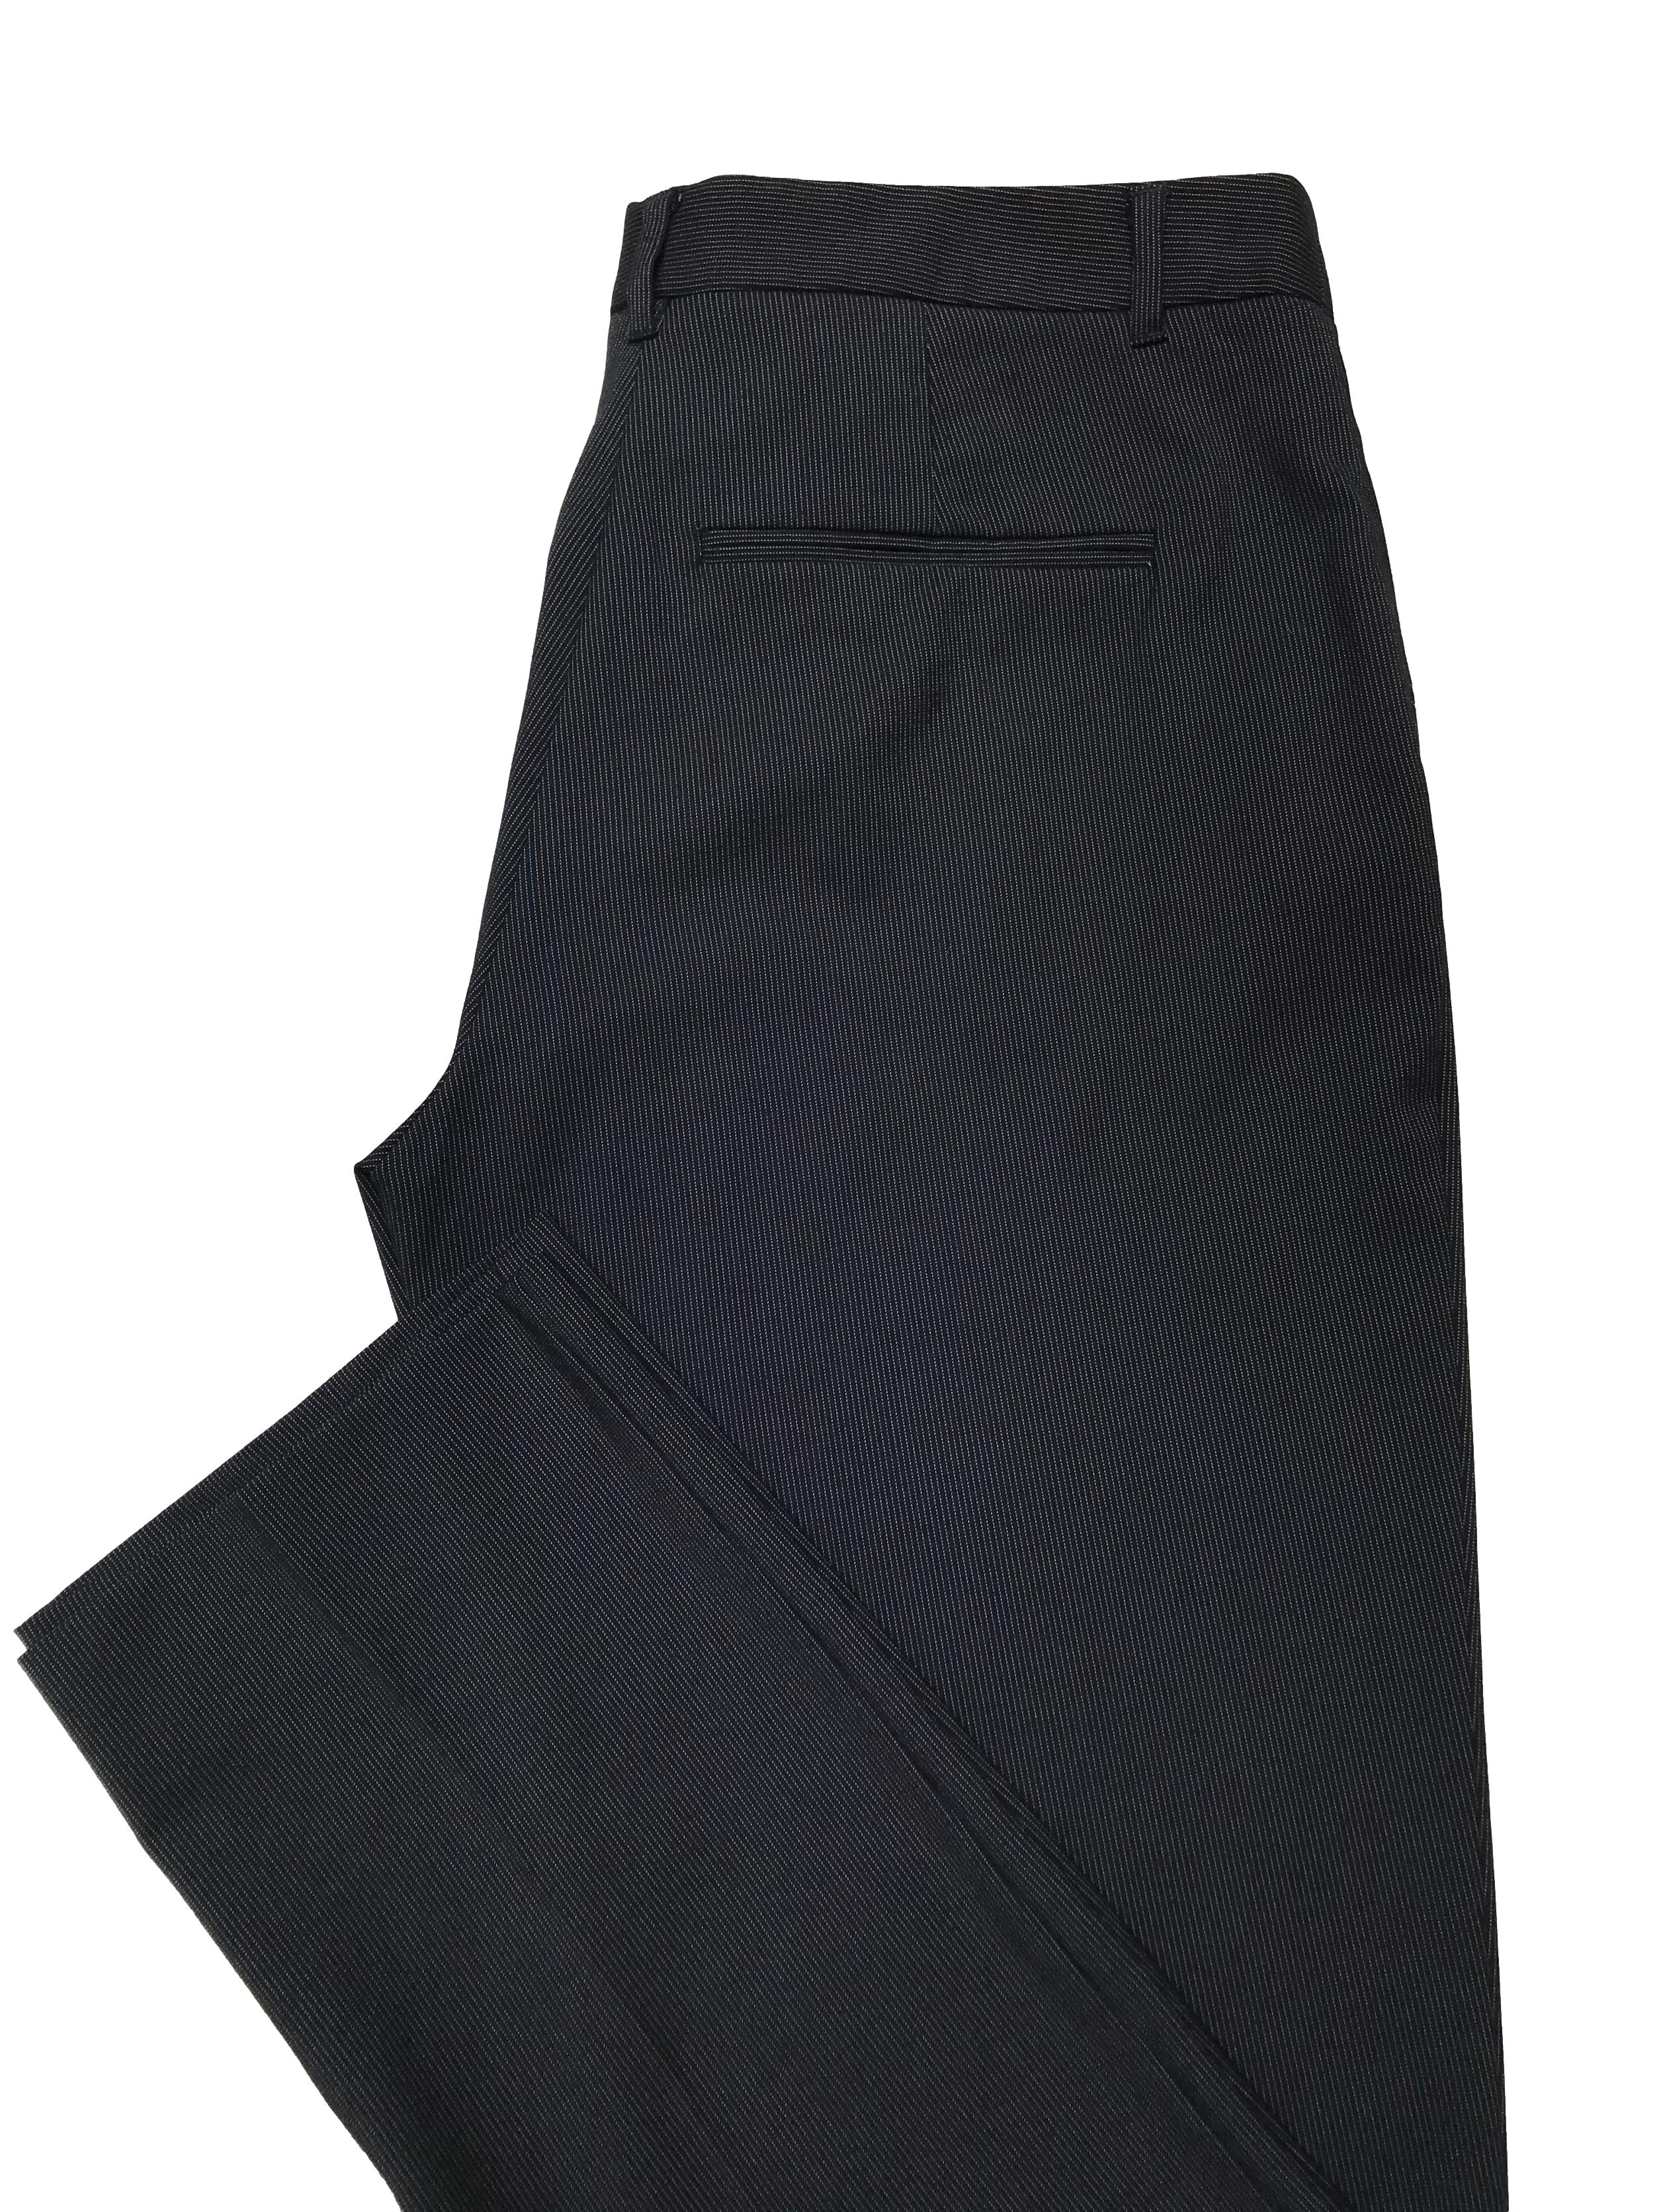 Pantalón Mango azul oscuro con líneas blancas, tiro medio, corte slim. Pretina 84cm Tiro 26cm Largo 100cm